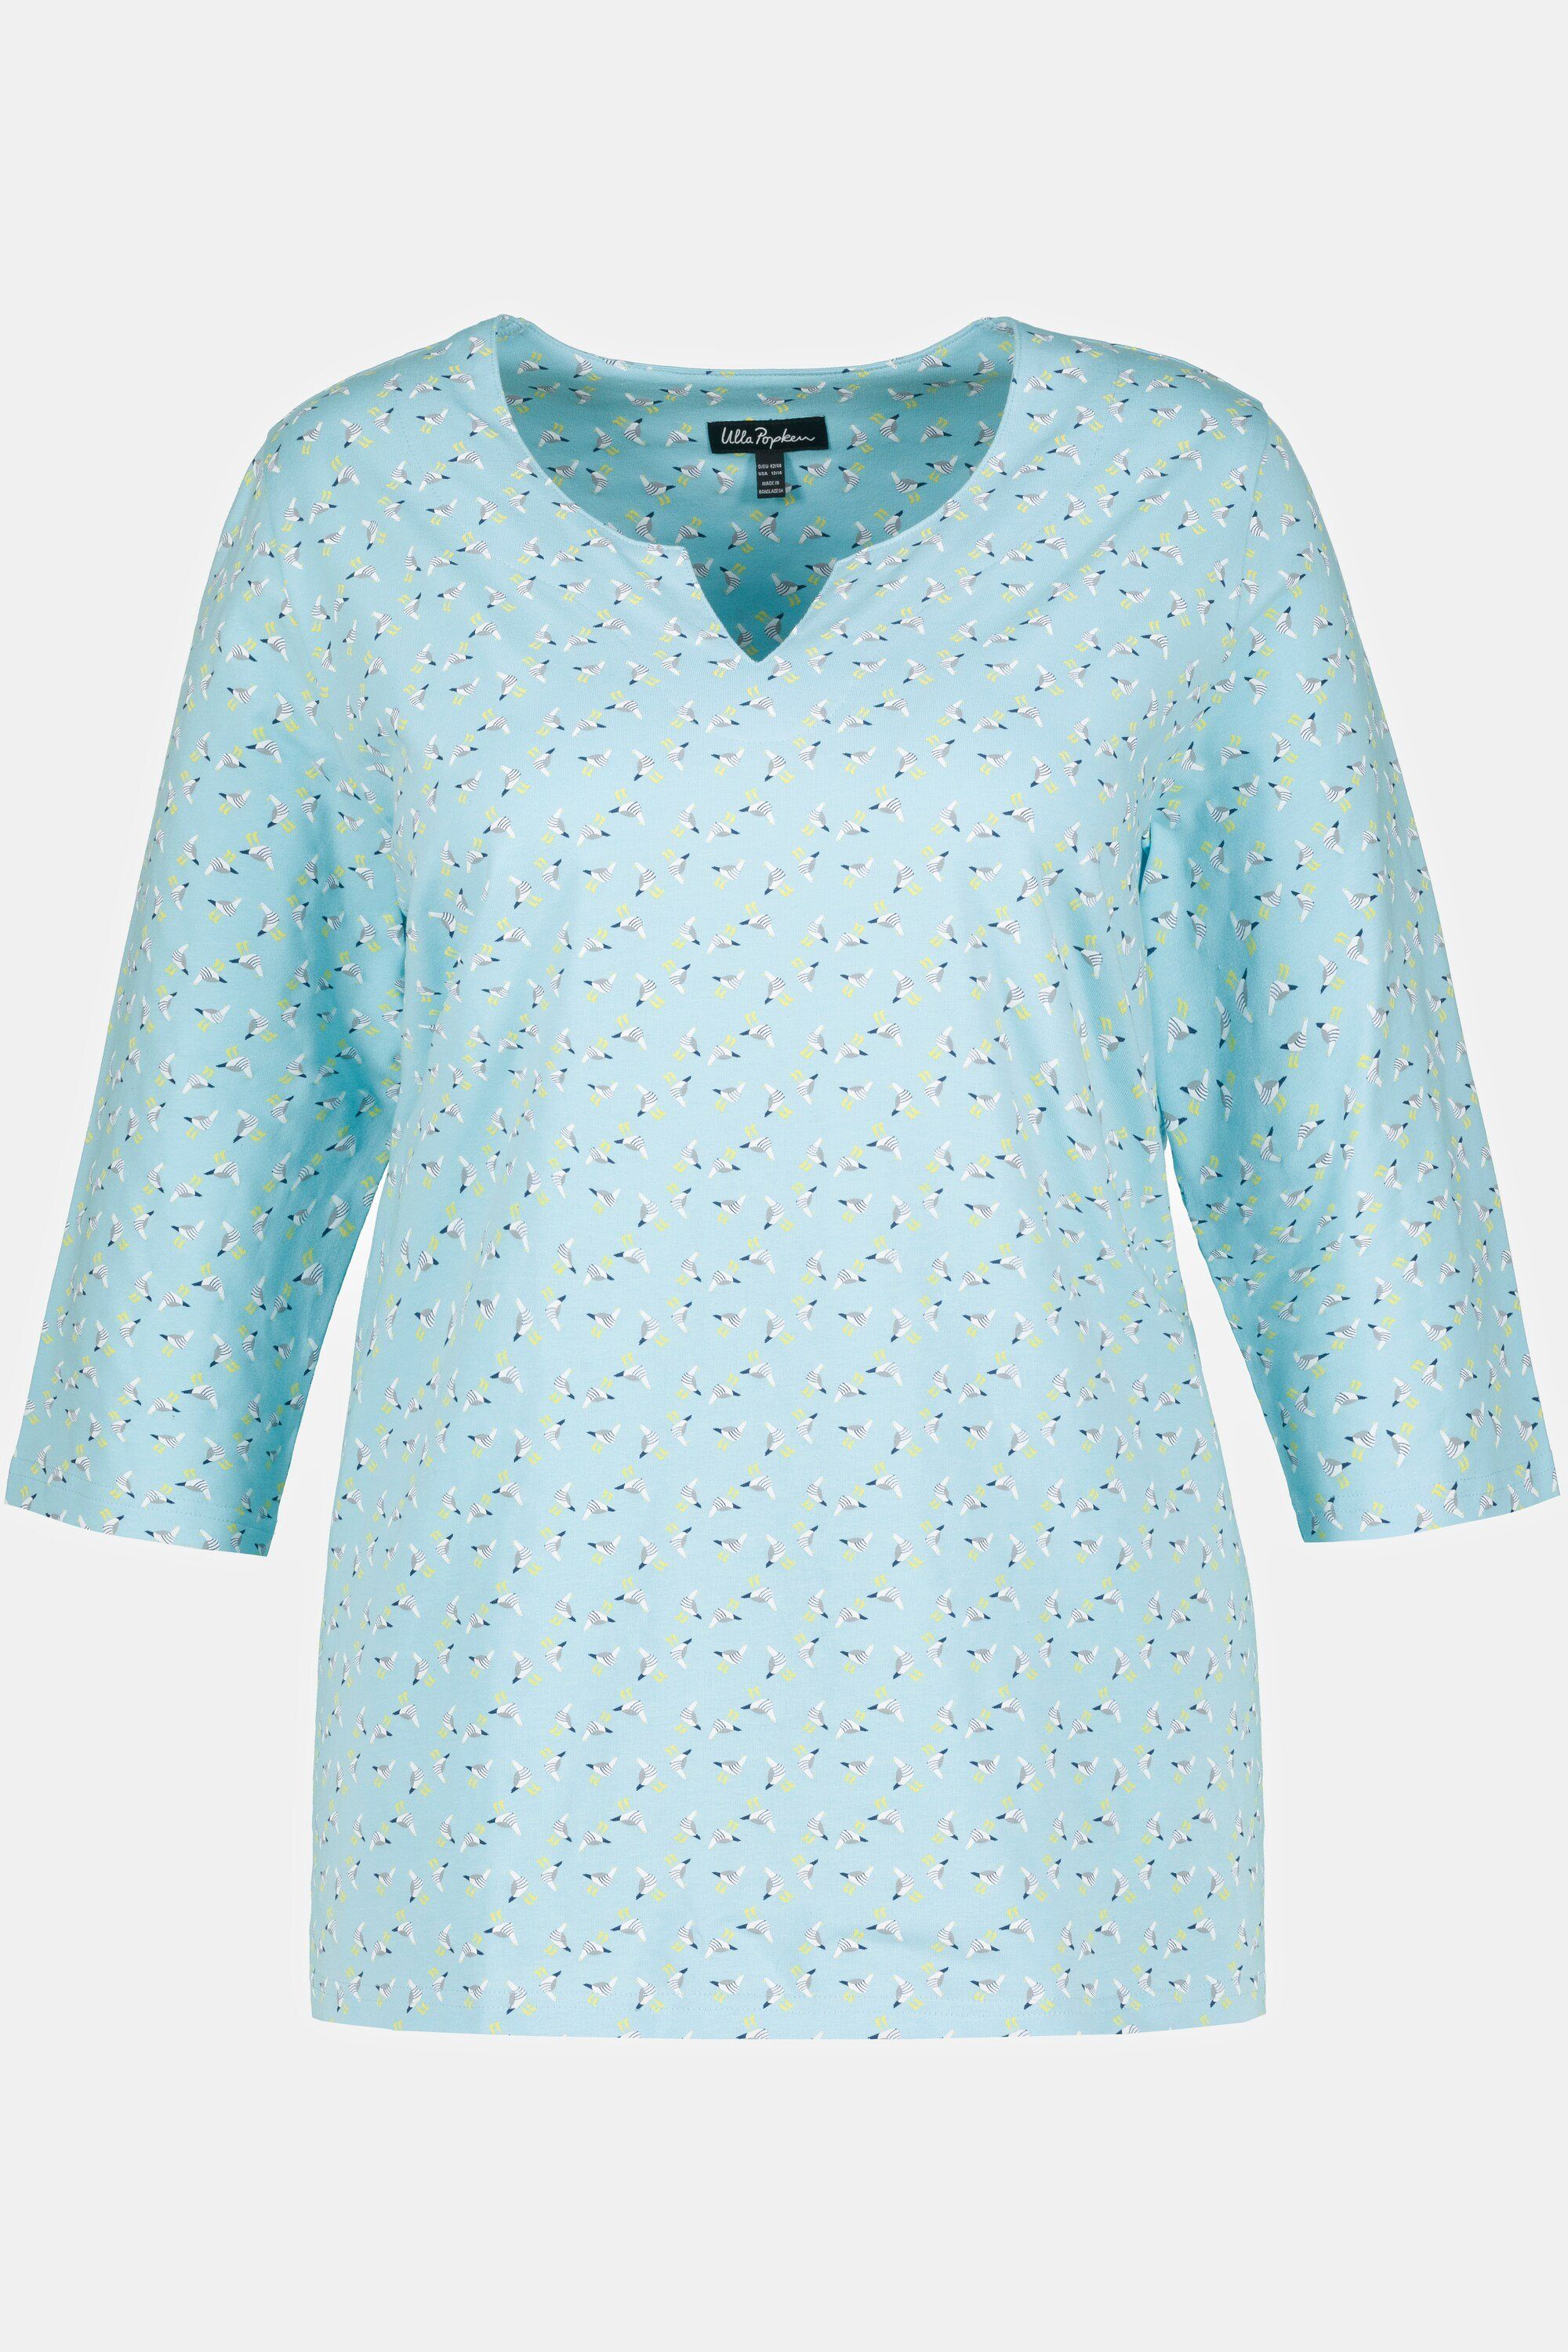 Ulla Popken Rundhalsshirt Shirt A-Linie Tunika-Ausschnitt hellblau Möwen 3/4-Arm